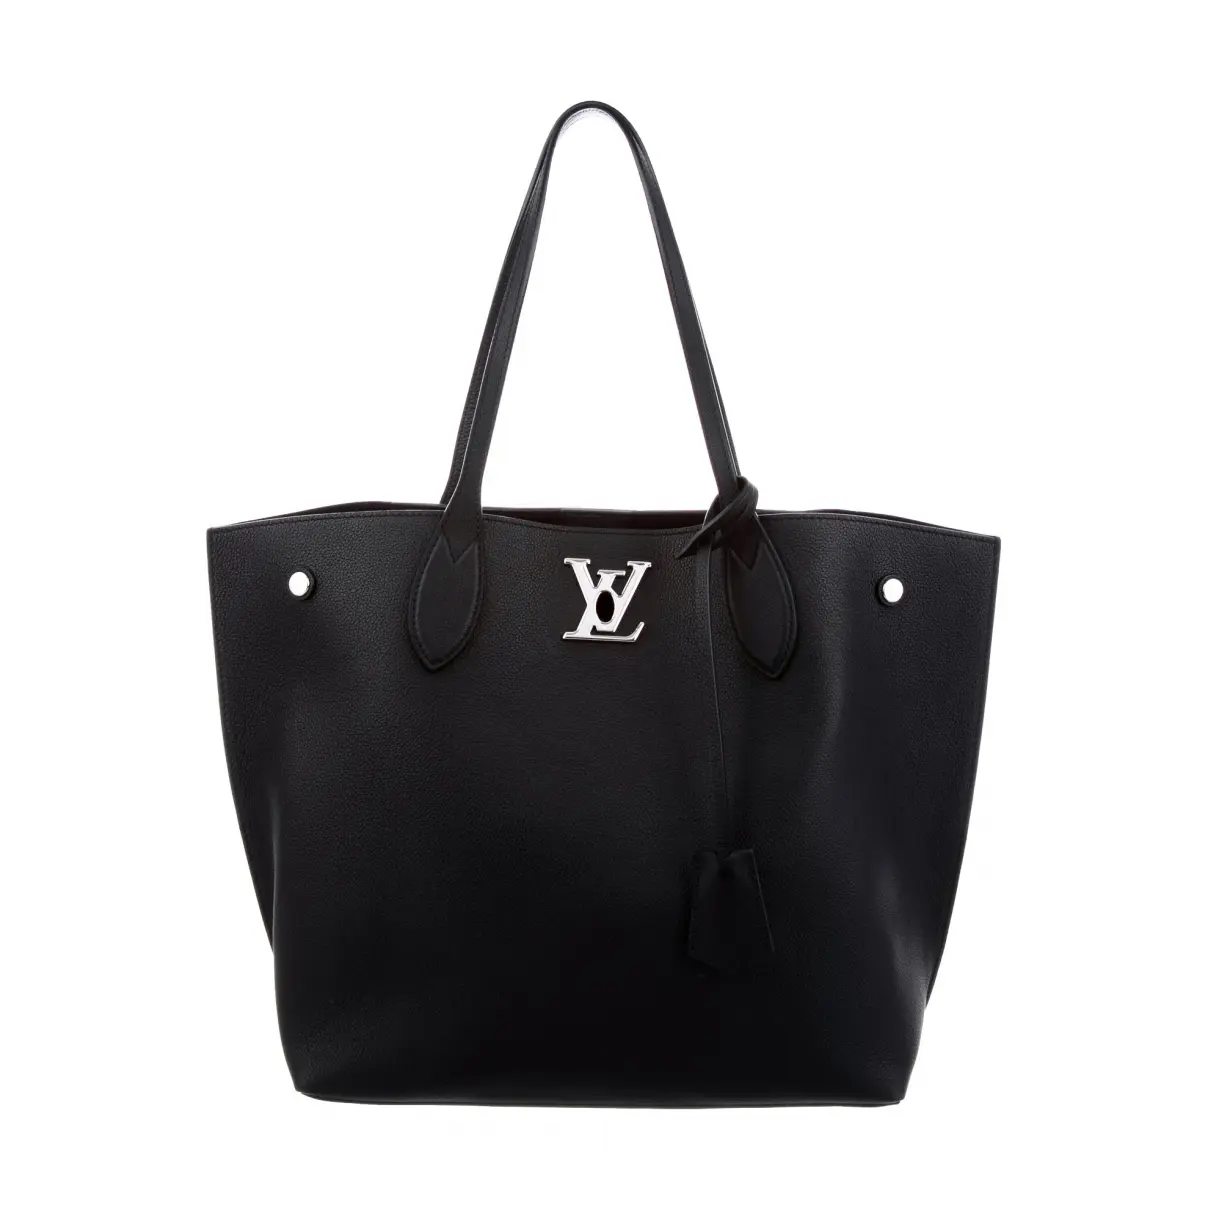 Bellevue leather handbag Louis Vuitton - Vintage